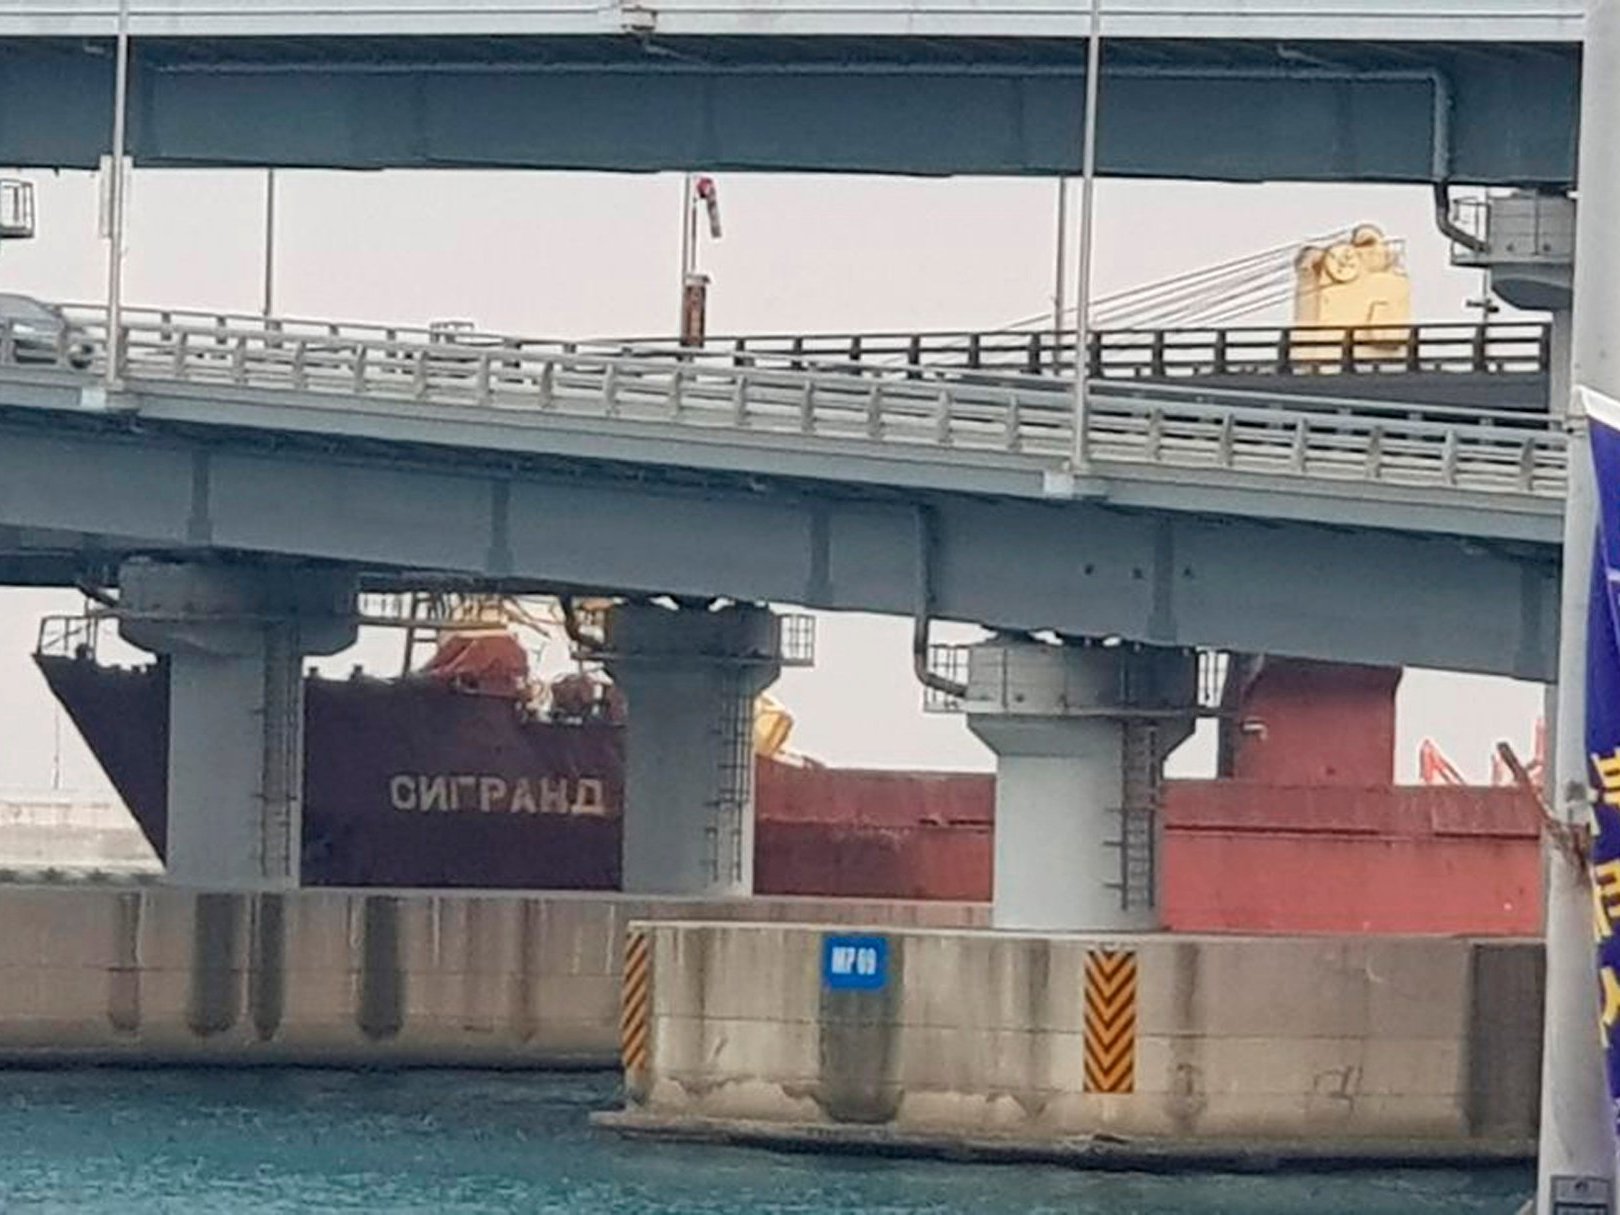 VIDEO: Cargo ship runs into Korean bridge